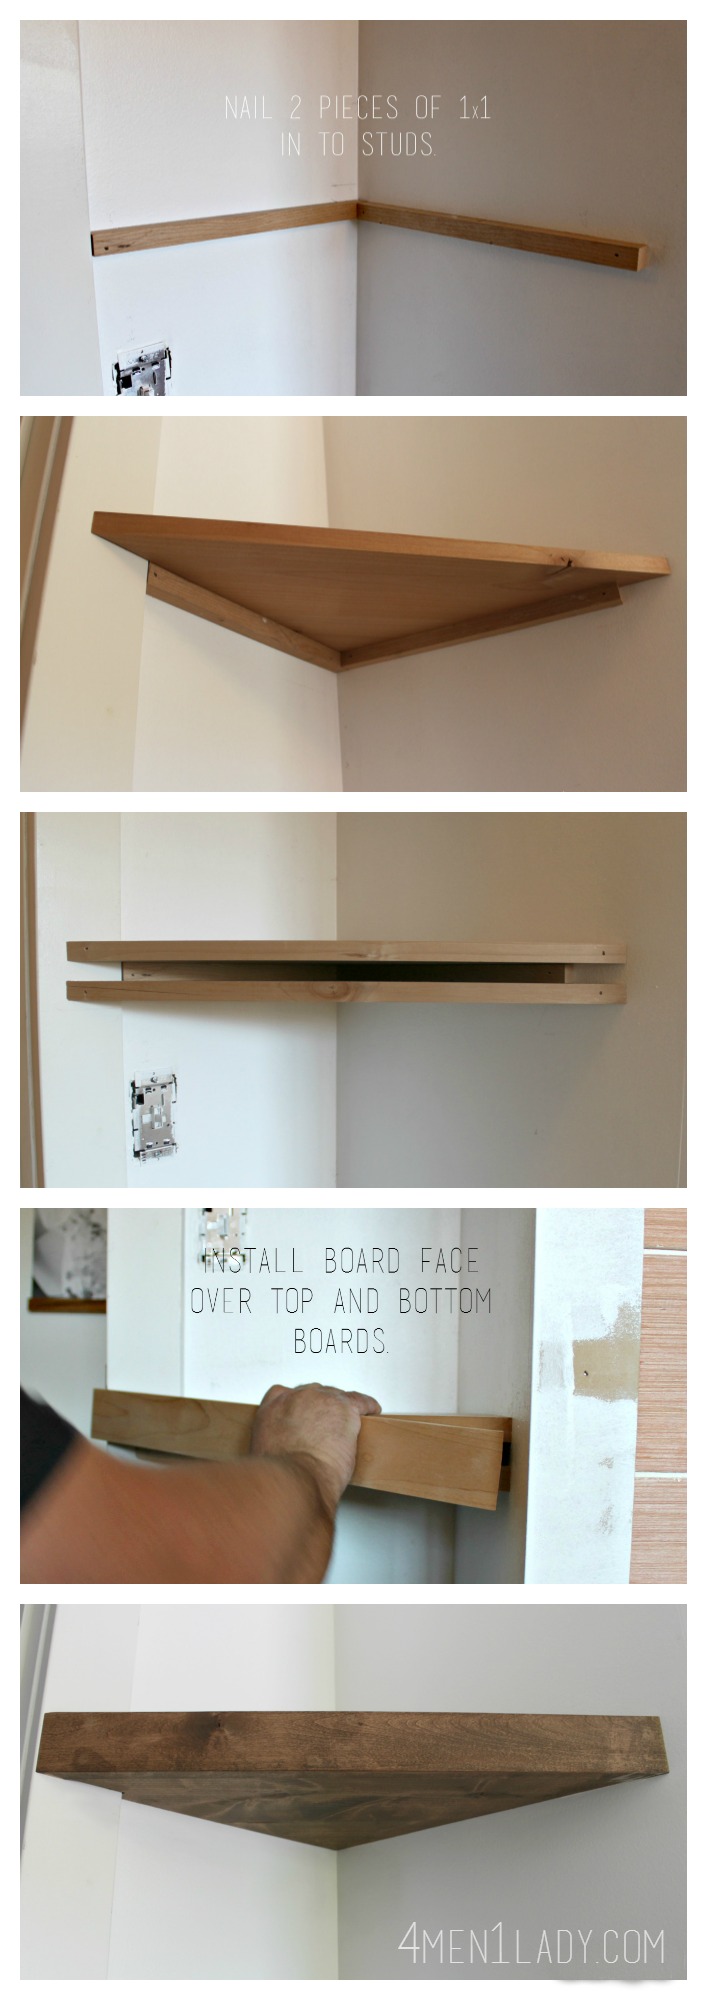 Floating Shelf Ideas: How to Hang Floating Shelfs